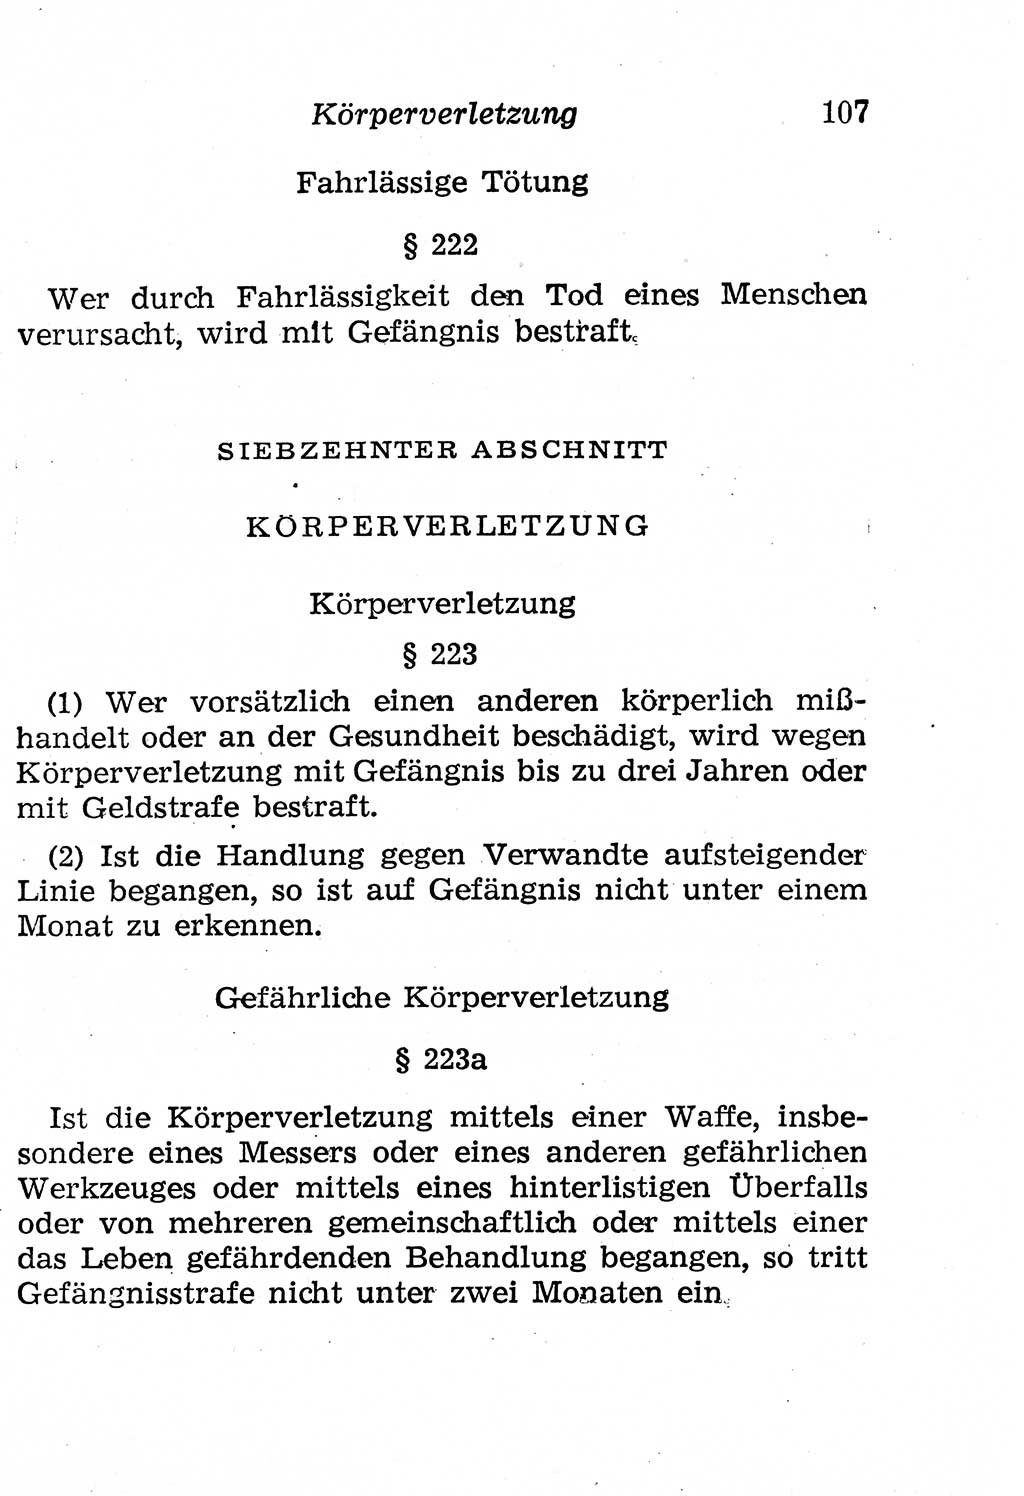 Strafgesetzbuch (StGB) und andere Strafgesetze [Deutsche Demokratische Republik (DDR)] 1958, Seite 107 (StGB Strafges. DDR 1958, S. 107)